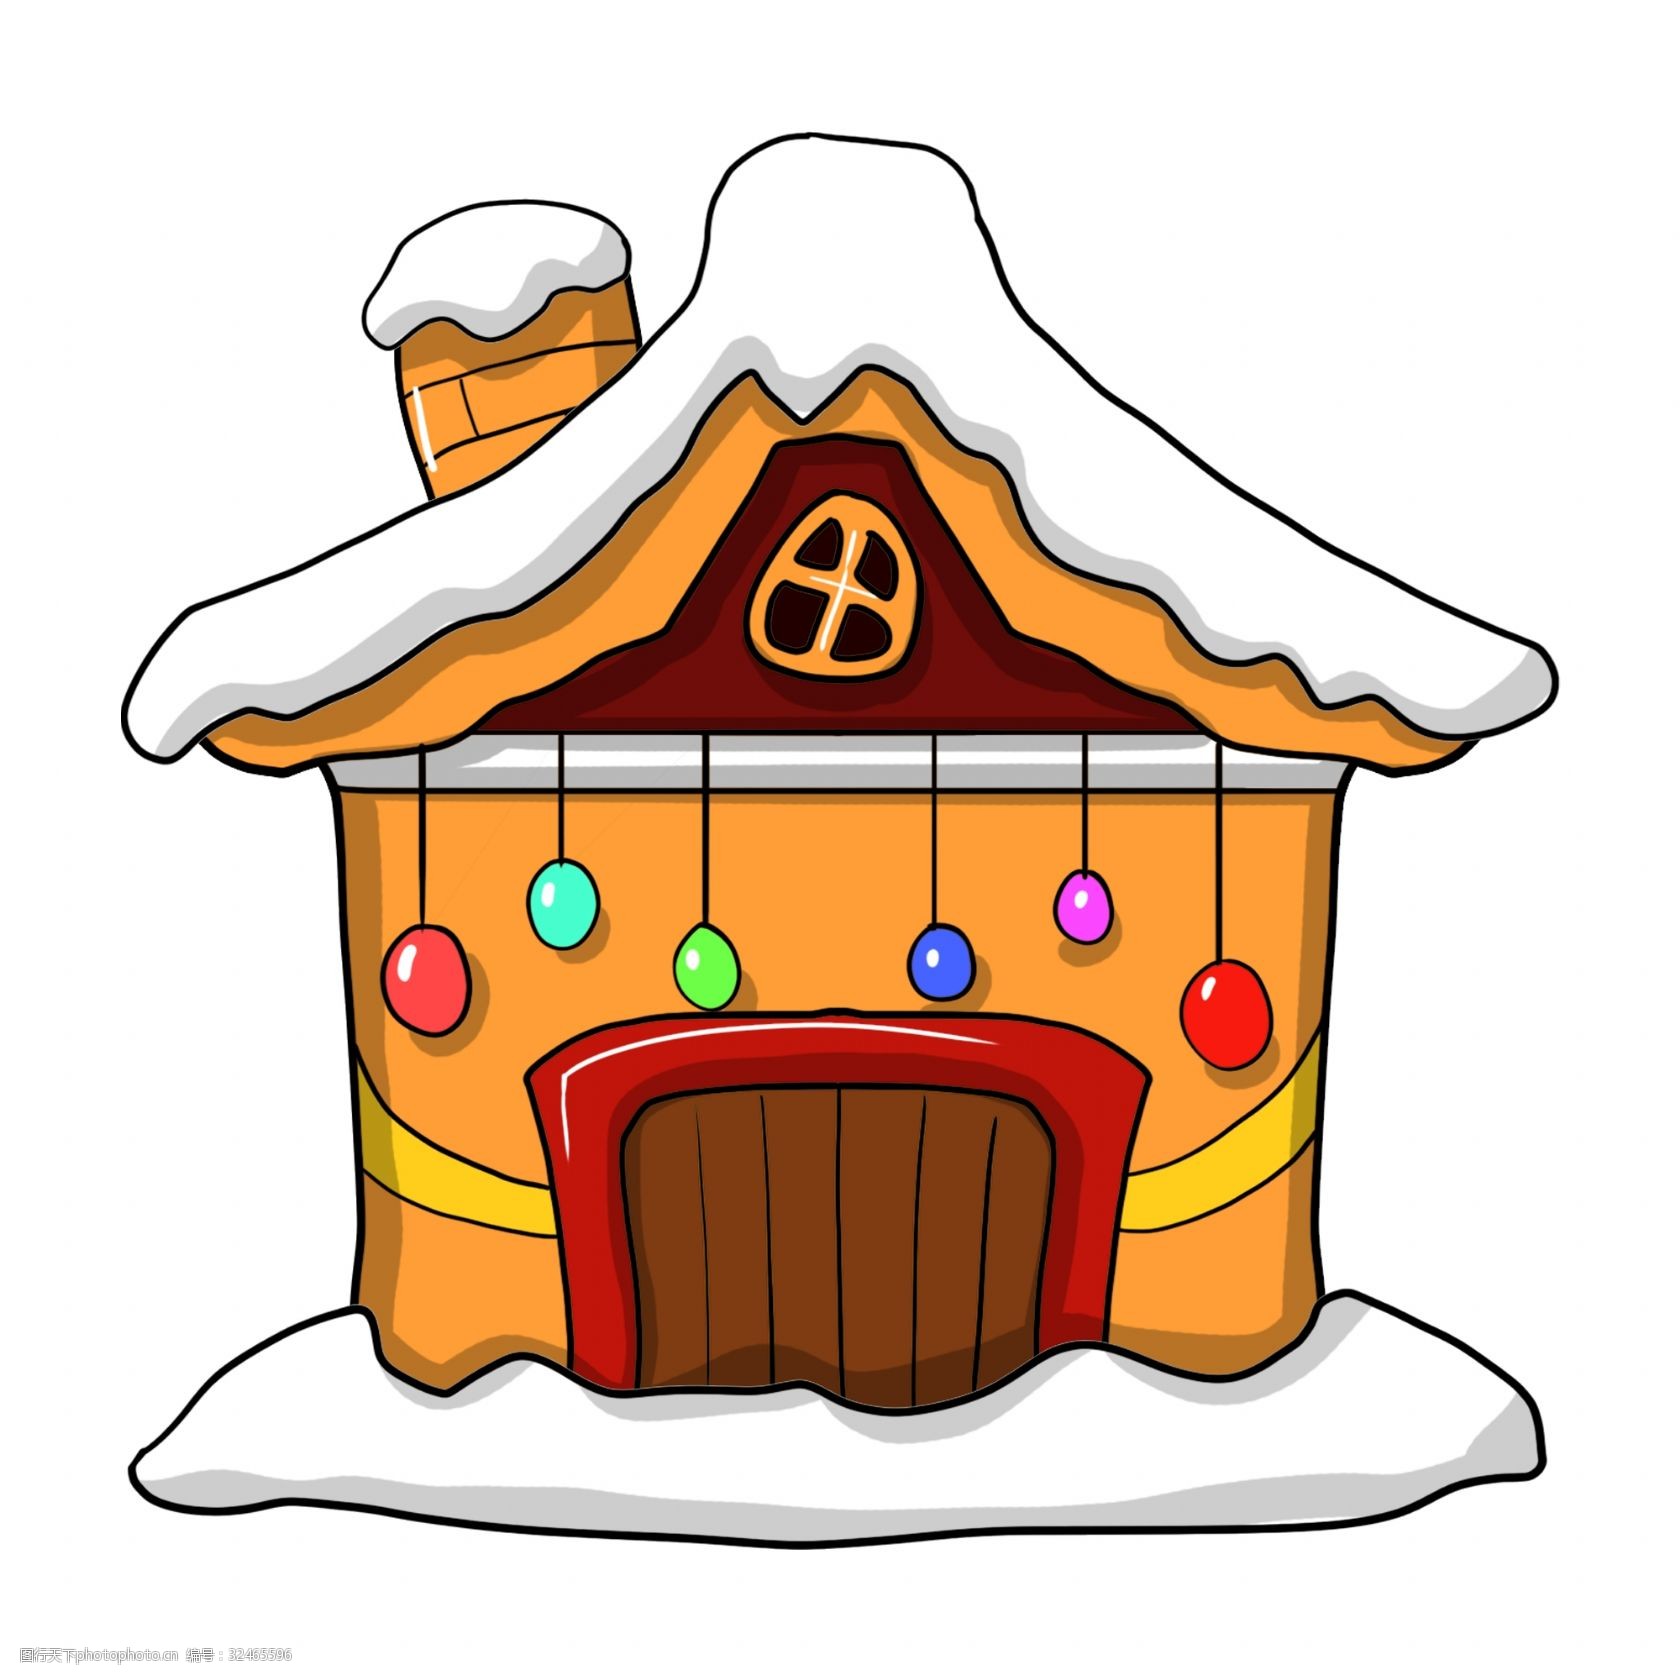 关键词:手绘黄色圣诞屋插画 圣诞屋 圣诞节 小房子 手绘房子 房子插画